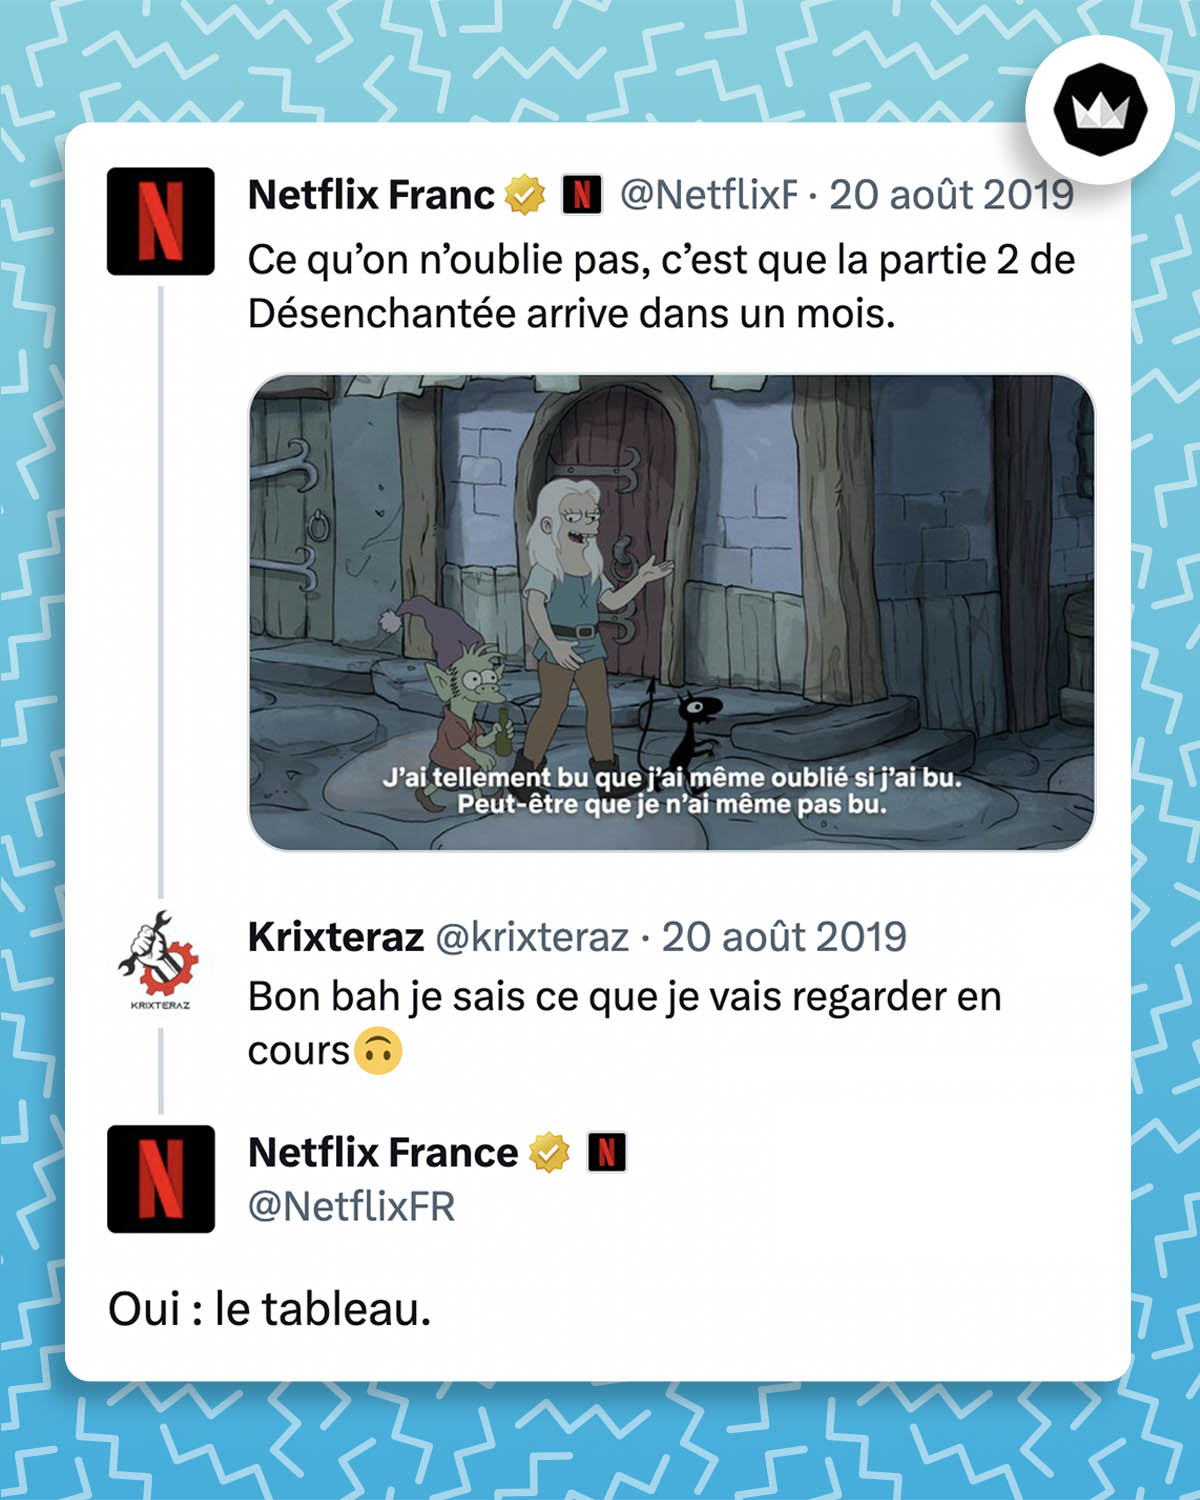 Tweet de @NetflixFR : "Ce qu’on n’oublie pas, c’est que la partie 2 de Désenchantée arrive dans un mois." Tweet de @krixteraz : "Bon bah je sais ce que je vais regarder en cours🙃" Tweet de @NetflixFR : "Oui : le tableau."